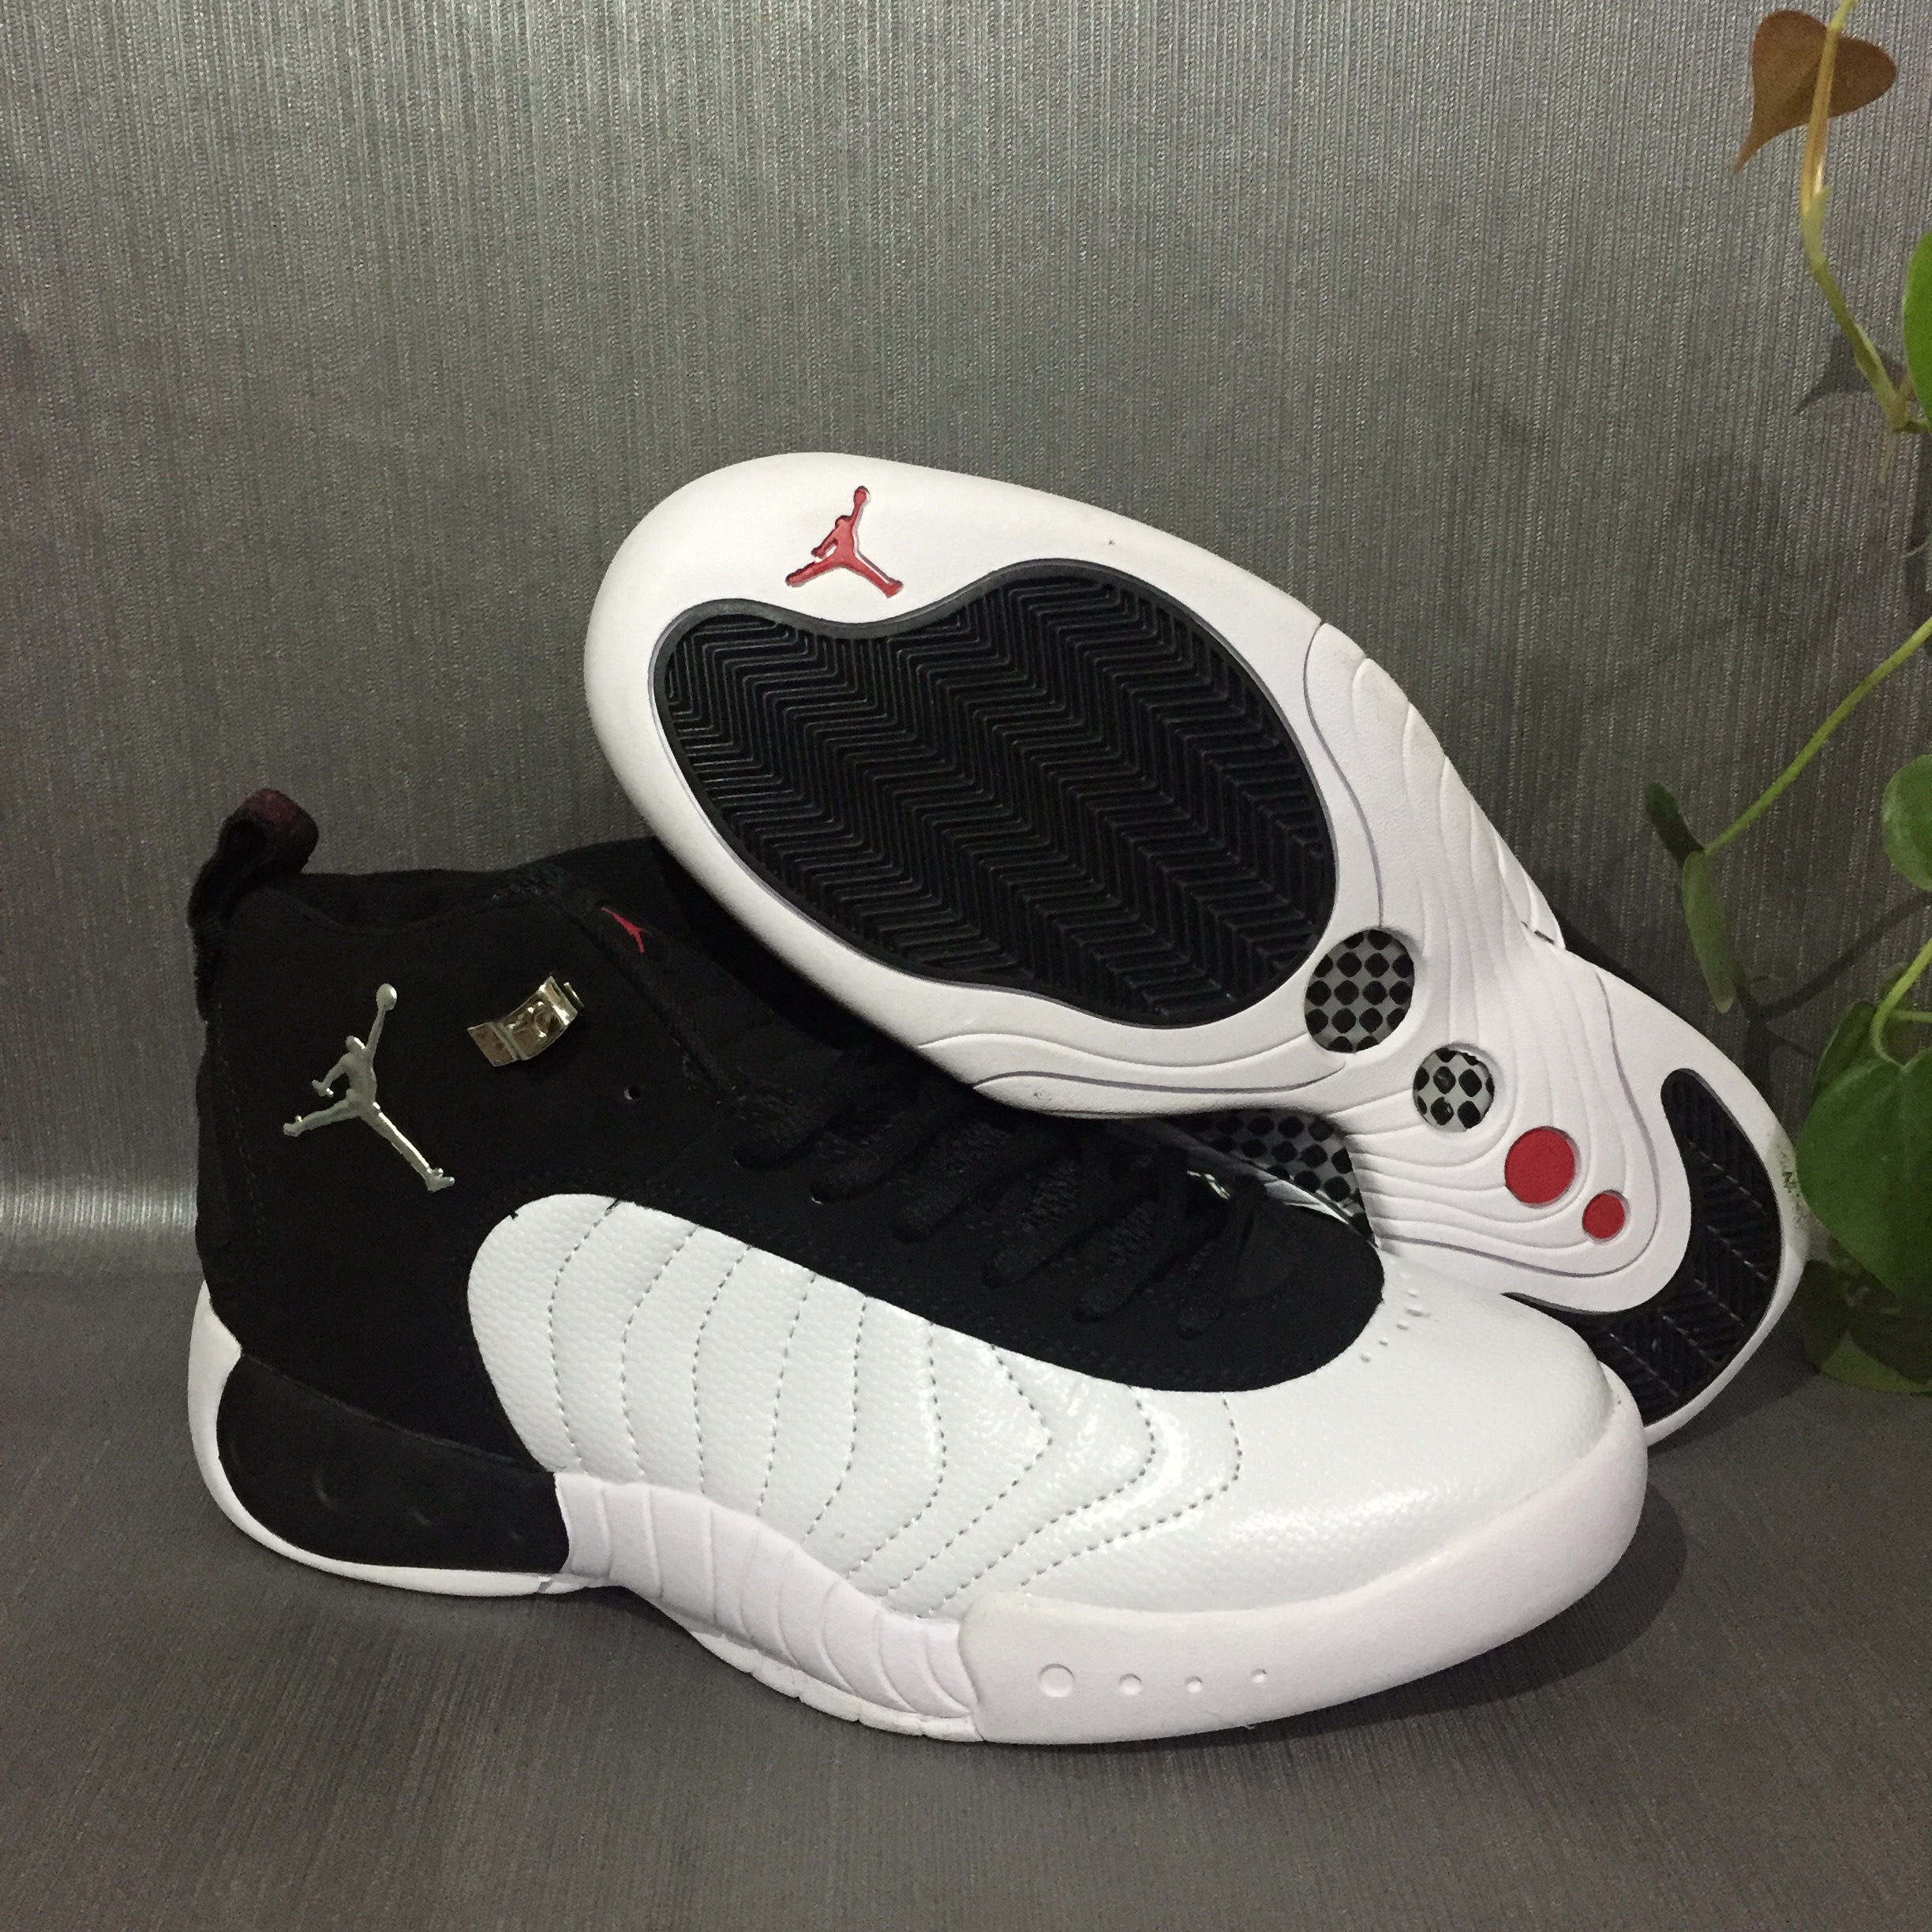 New Jordan Jumpman Pro Black White Shoes